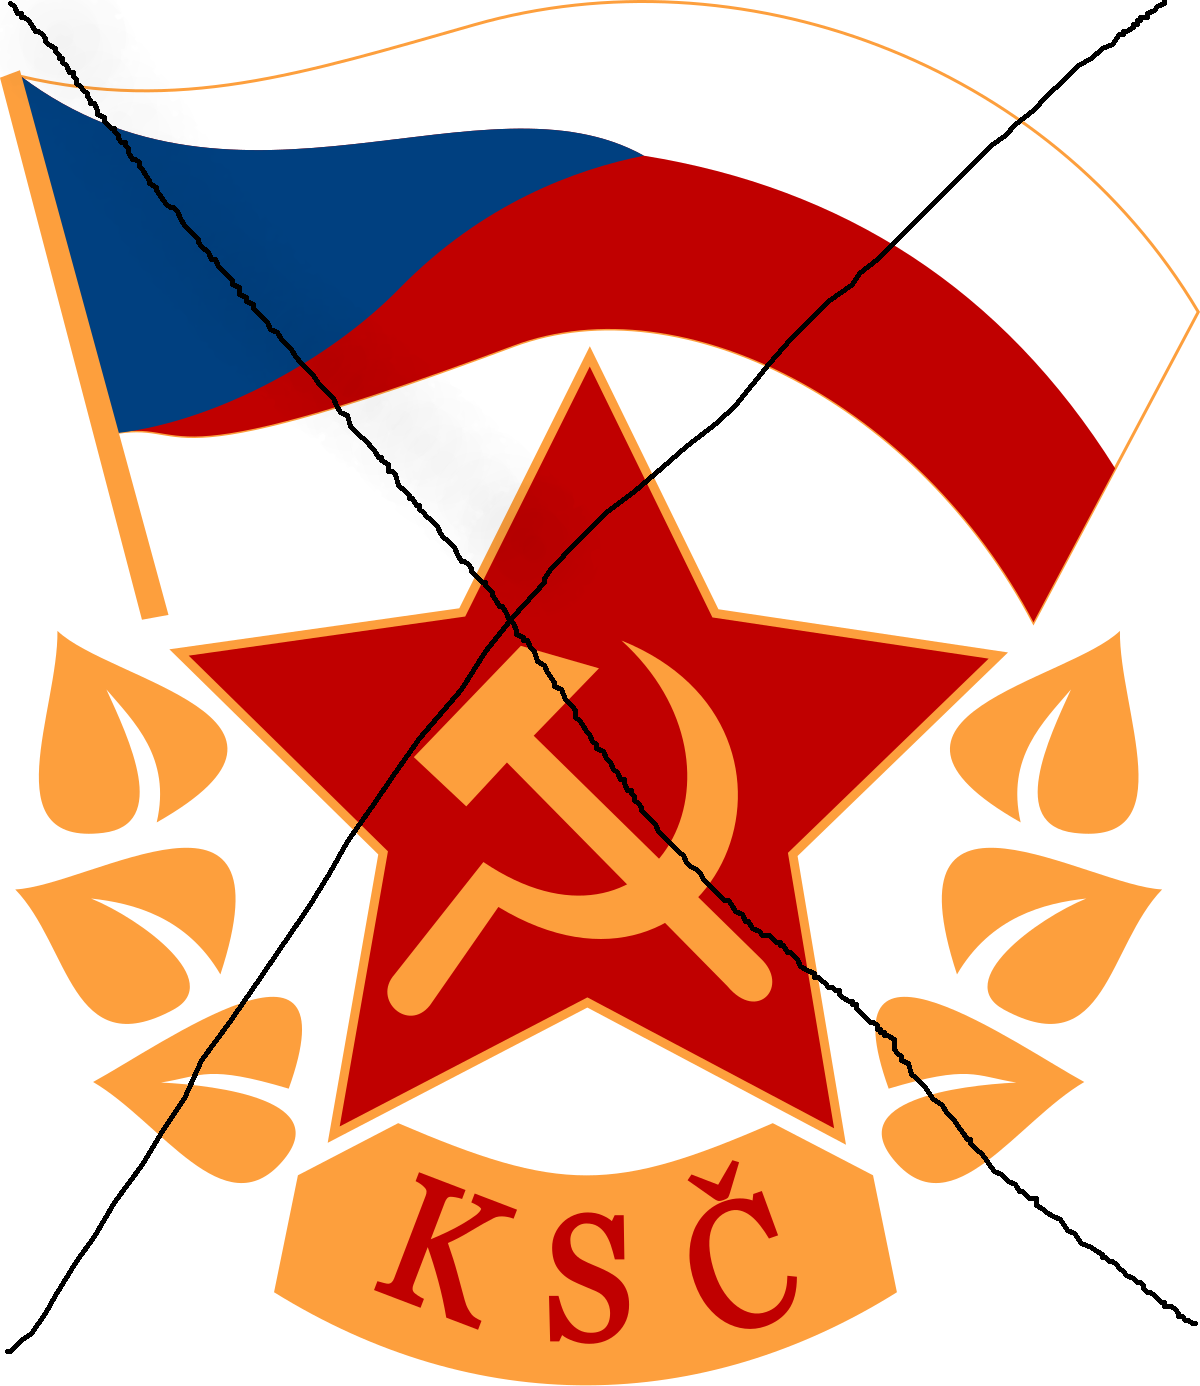 Комуністична партія Чехословаччини визнана злочинною організацією